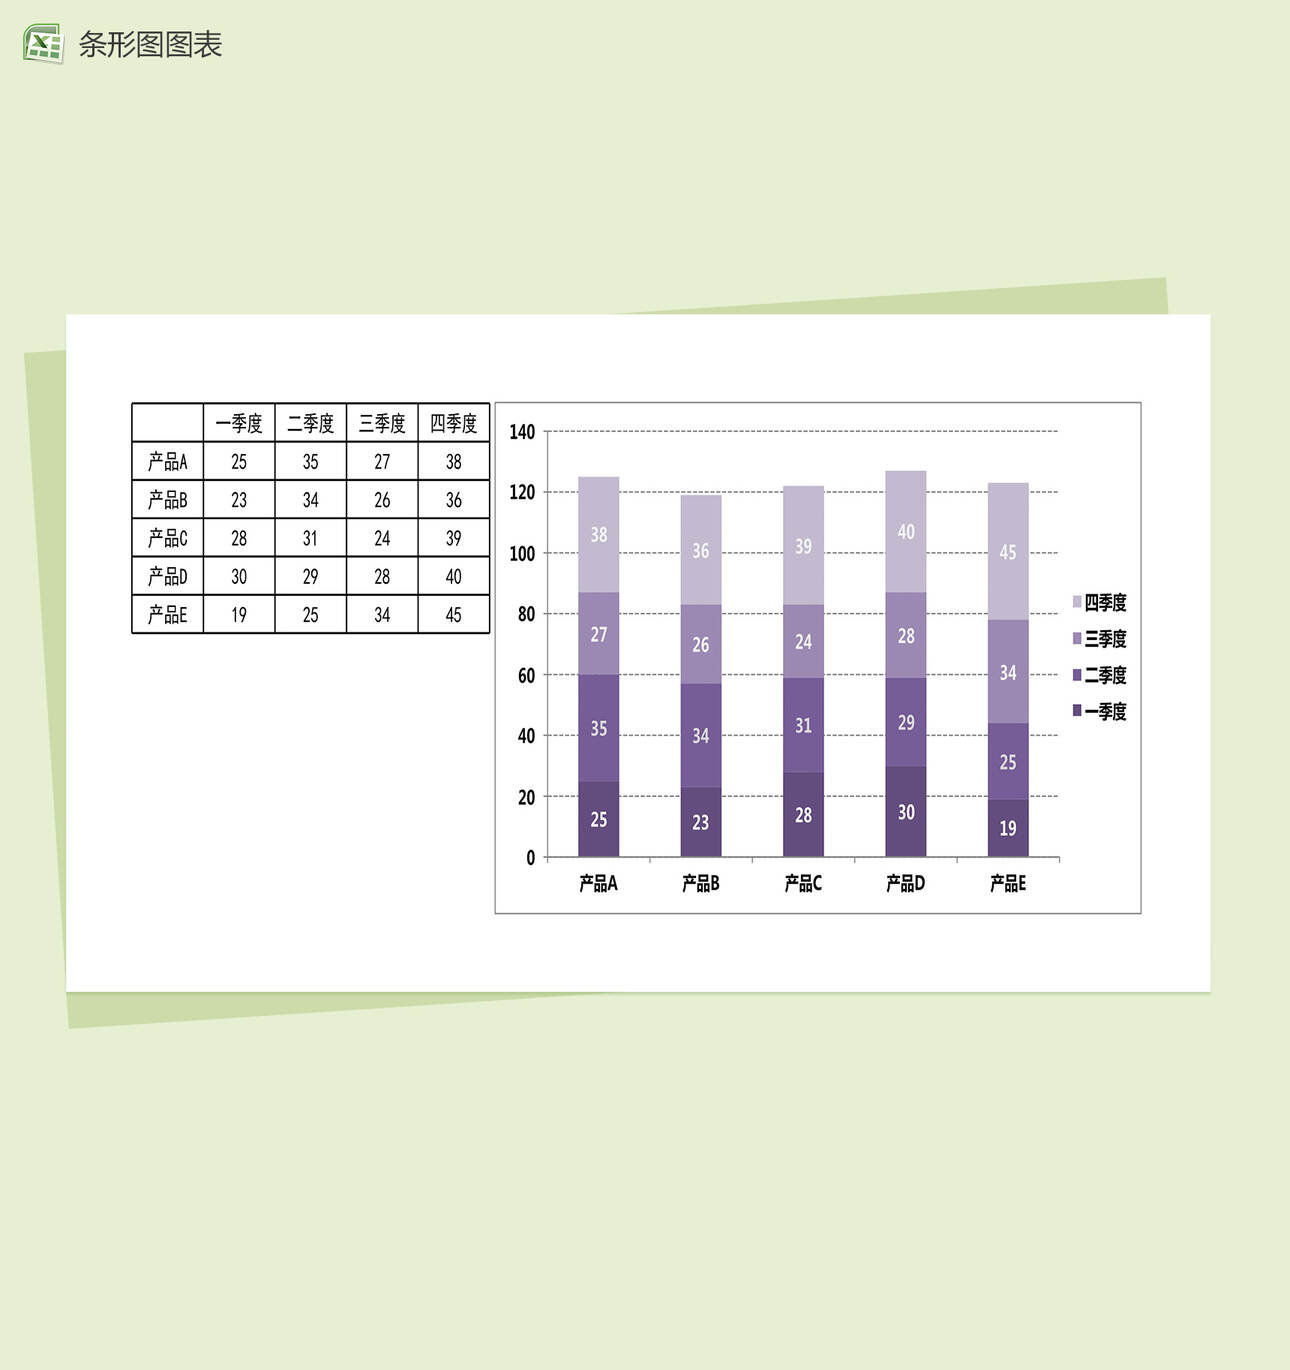 紫色柱形图可视化数据分析excel图表模板